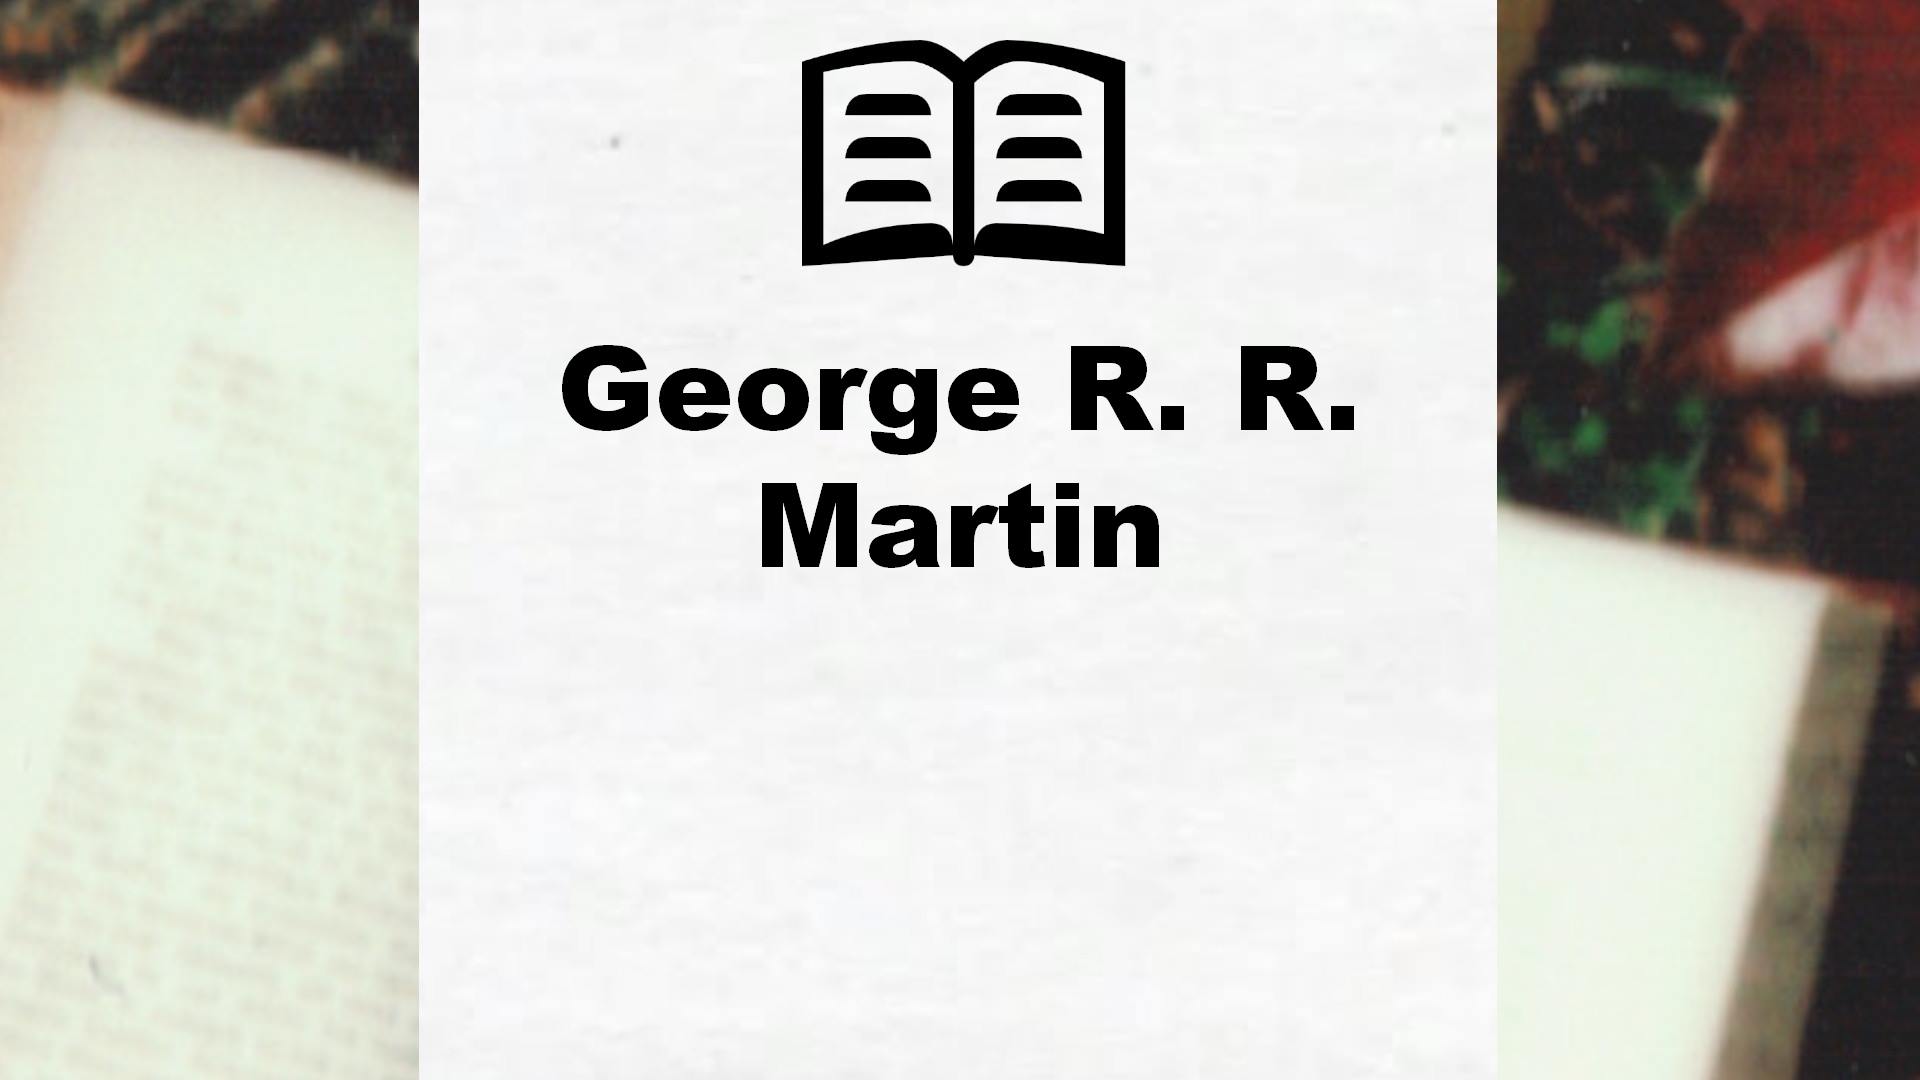 Livres de George R. R. Martin